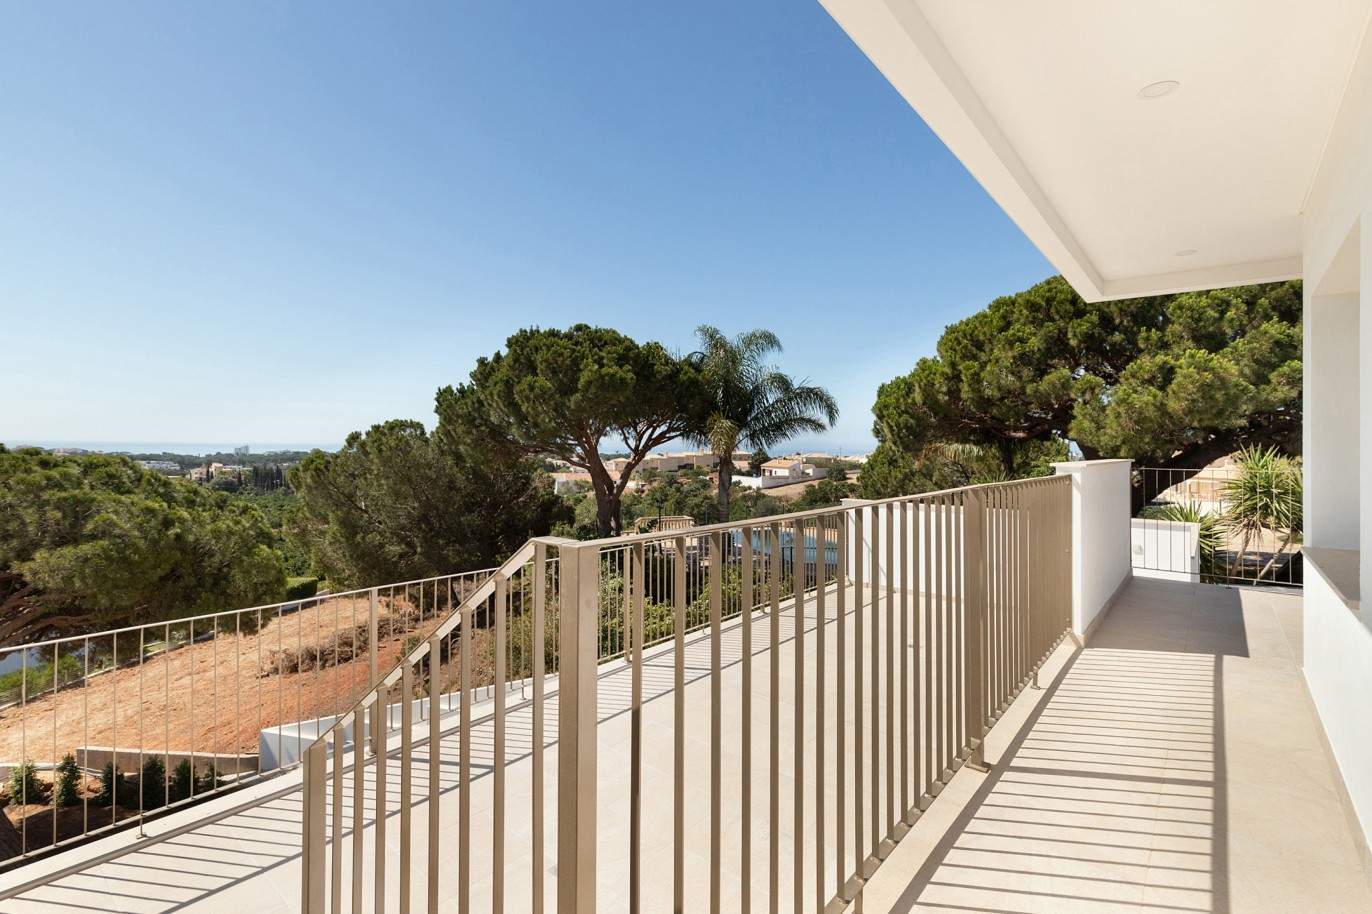 Villa de 5 dormitorios, de nueva construcción, en venta en Albufeira, Algarve_203246